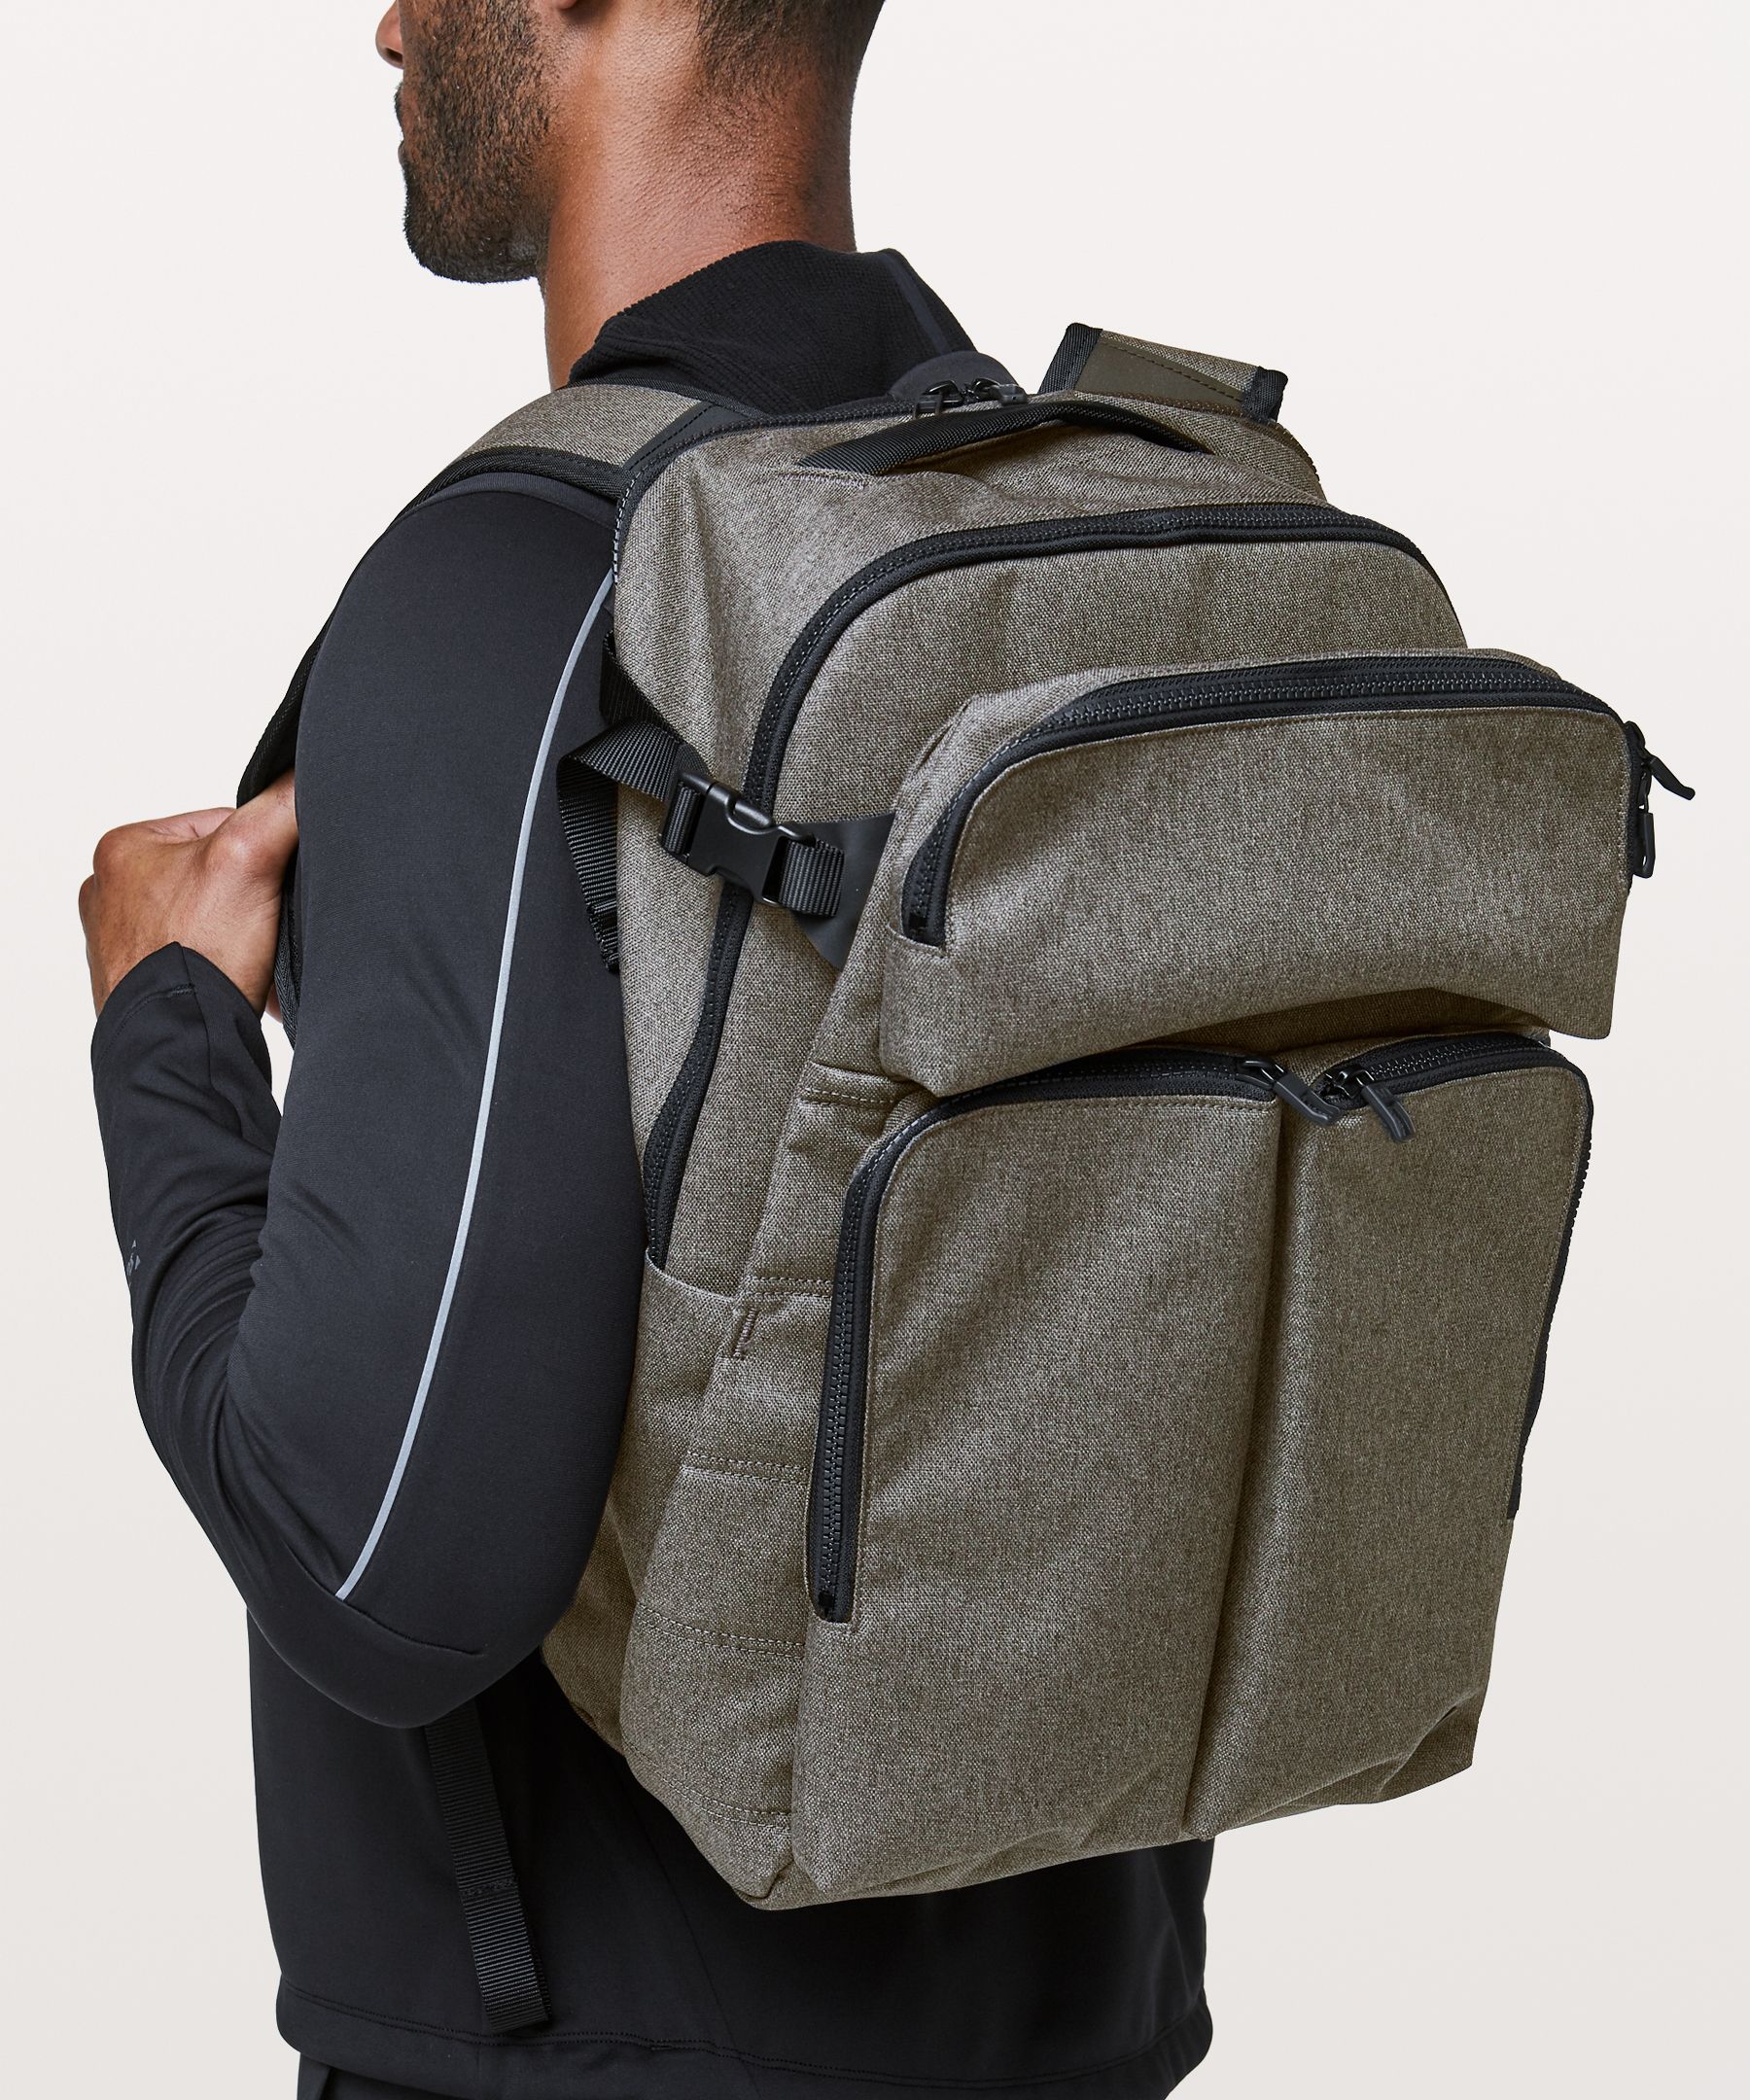 lululemon assert backpack review